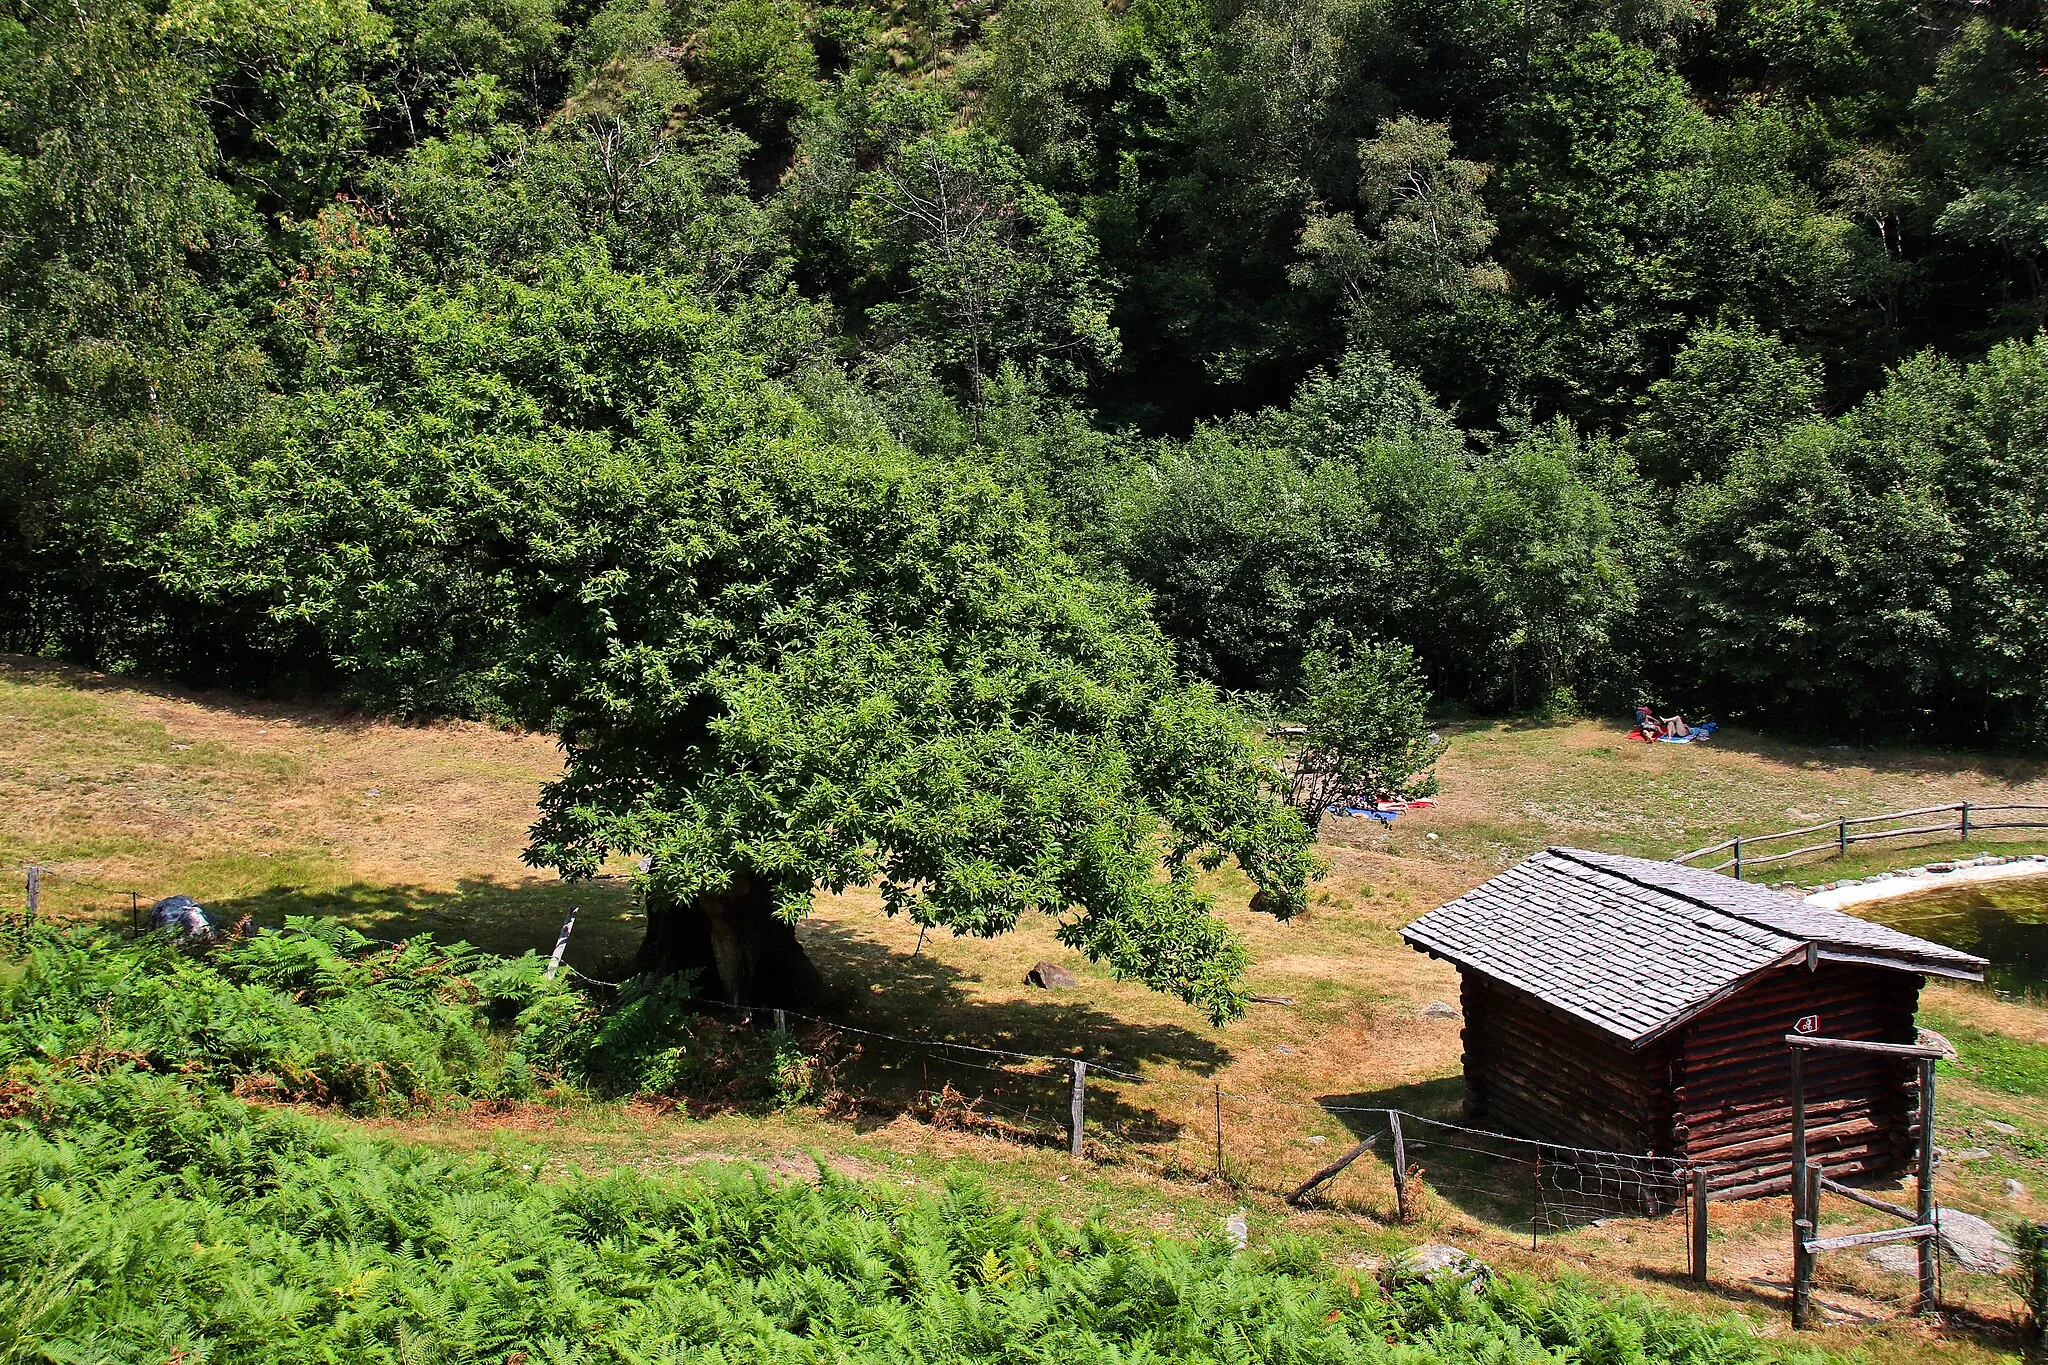 Photo showing: Brève rando de 10 km et 110 équivalents étages d’Arosio Bassa à Breno, dans le Malcantone (Tessin - Ticino) sur le chemin de la châtaigne (sentier del castagno). Le tracé GPS est ici :https://www.wikiloc.com/hiking-trails/sentiero-del-castagno-chemin-de-la-chataigne-ticino-27010791